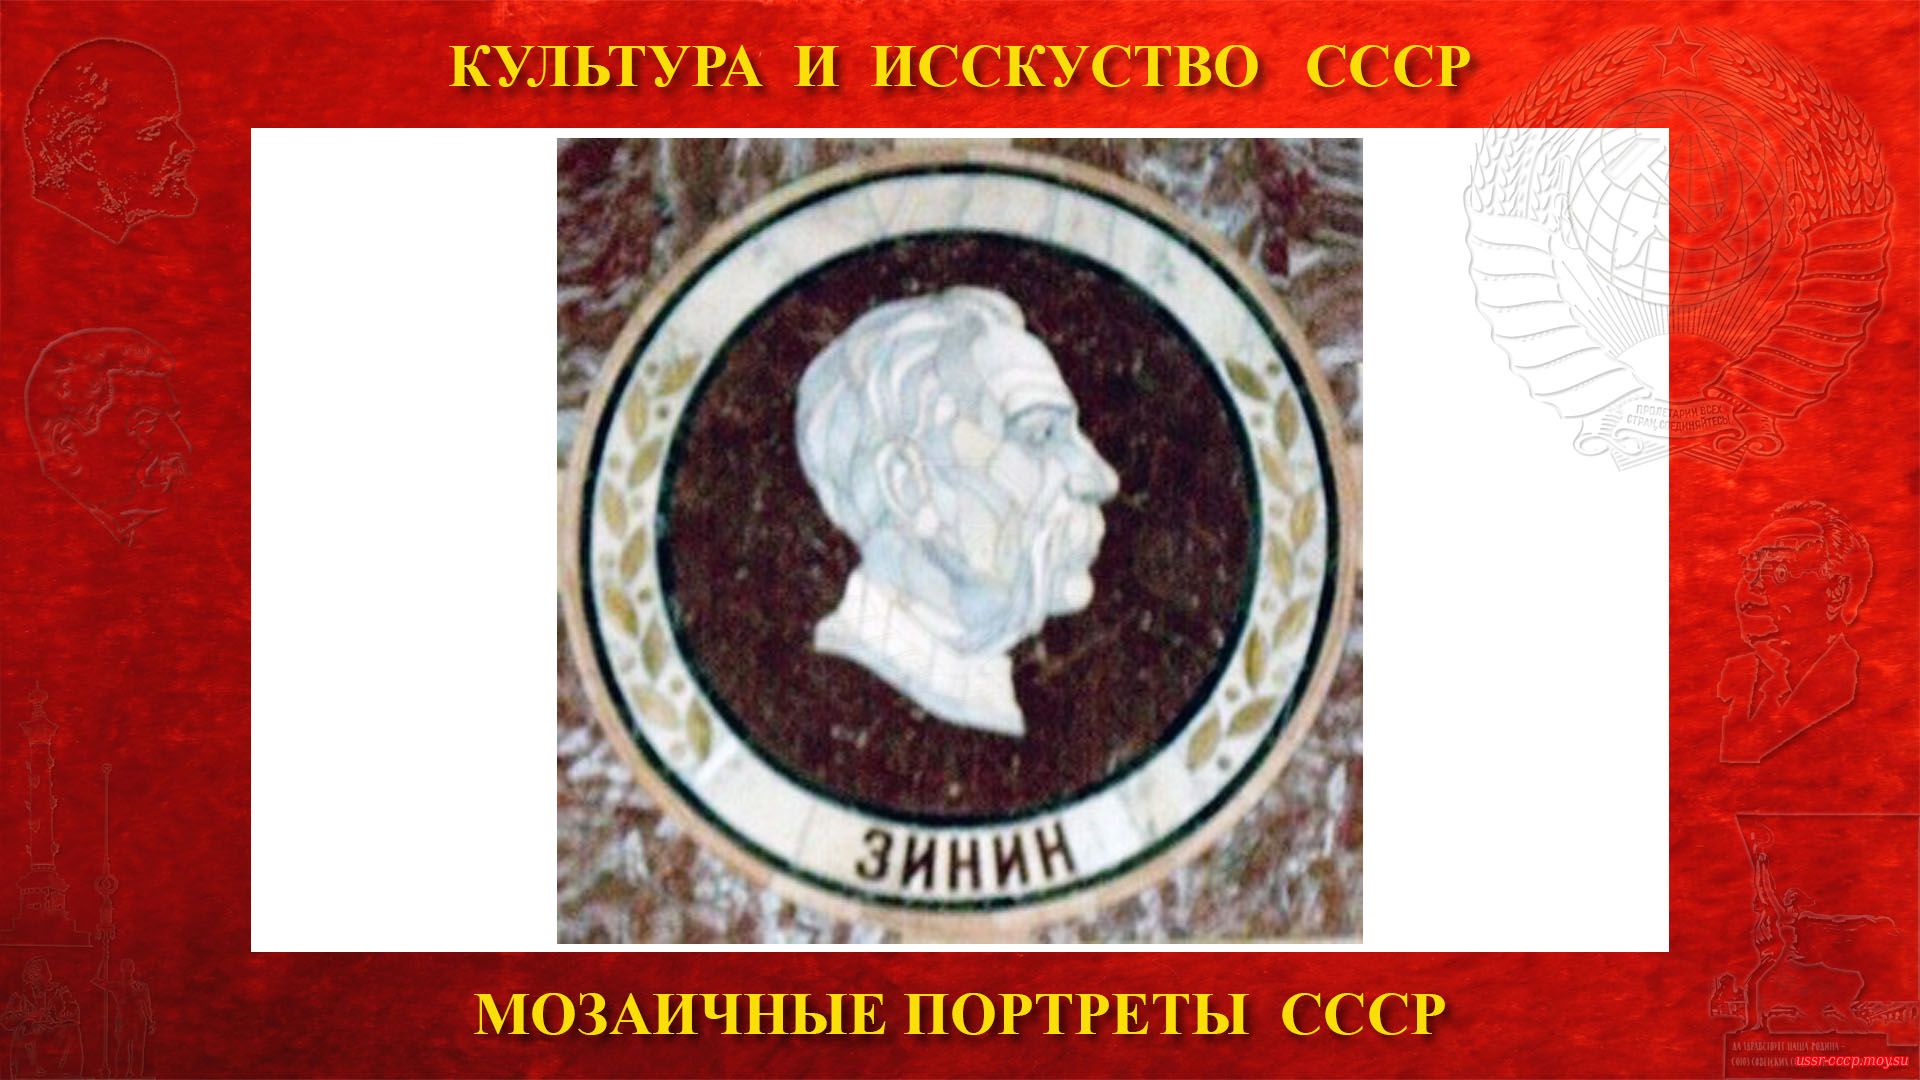 Мозаичный портрет Зинину Н.Н. на Ленинских горах в ГЗ МГУ (Москва 1953)